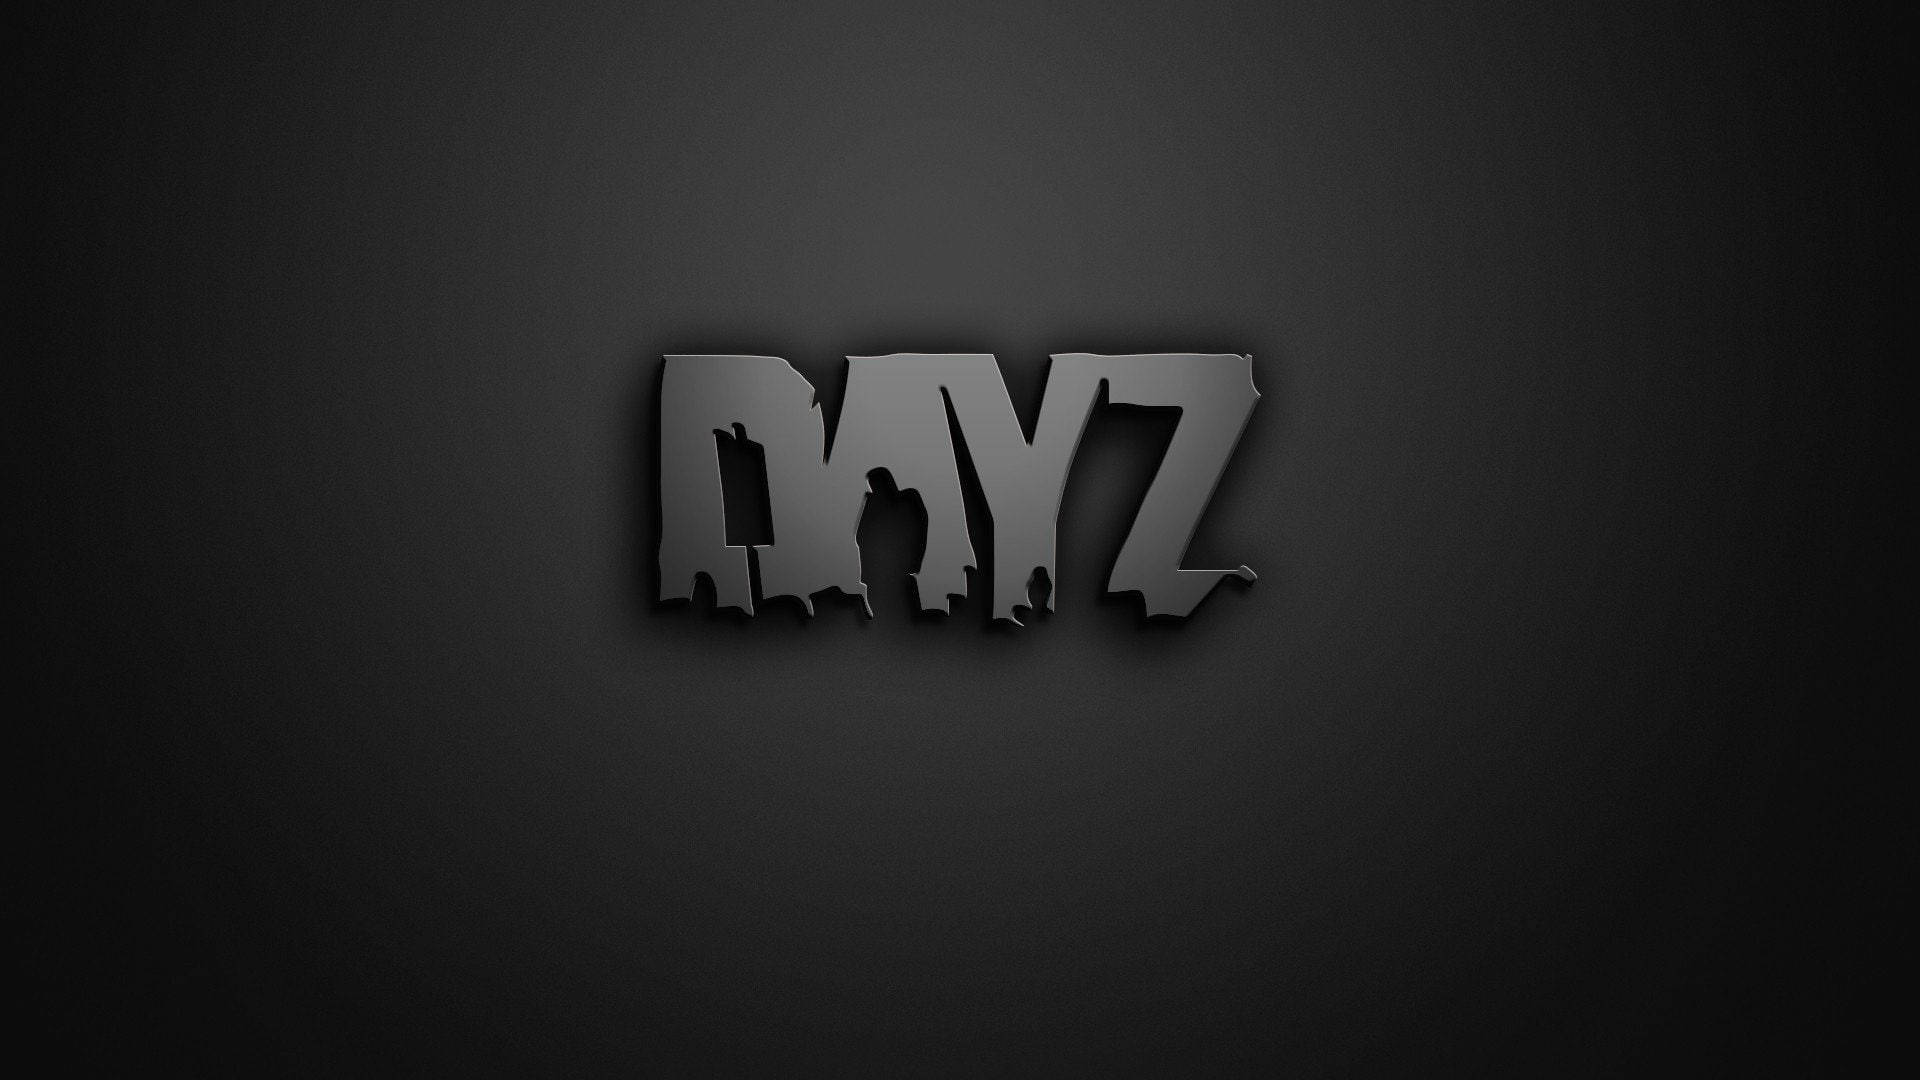 Gray Dayz Desktop Wordmark Background